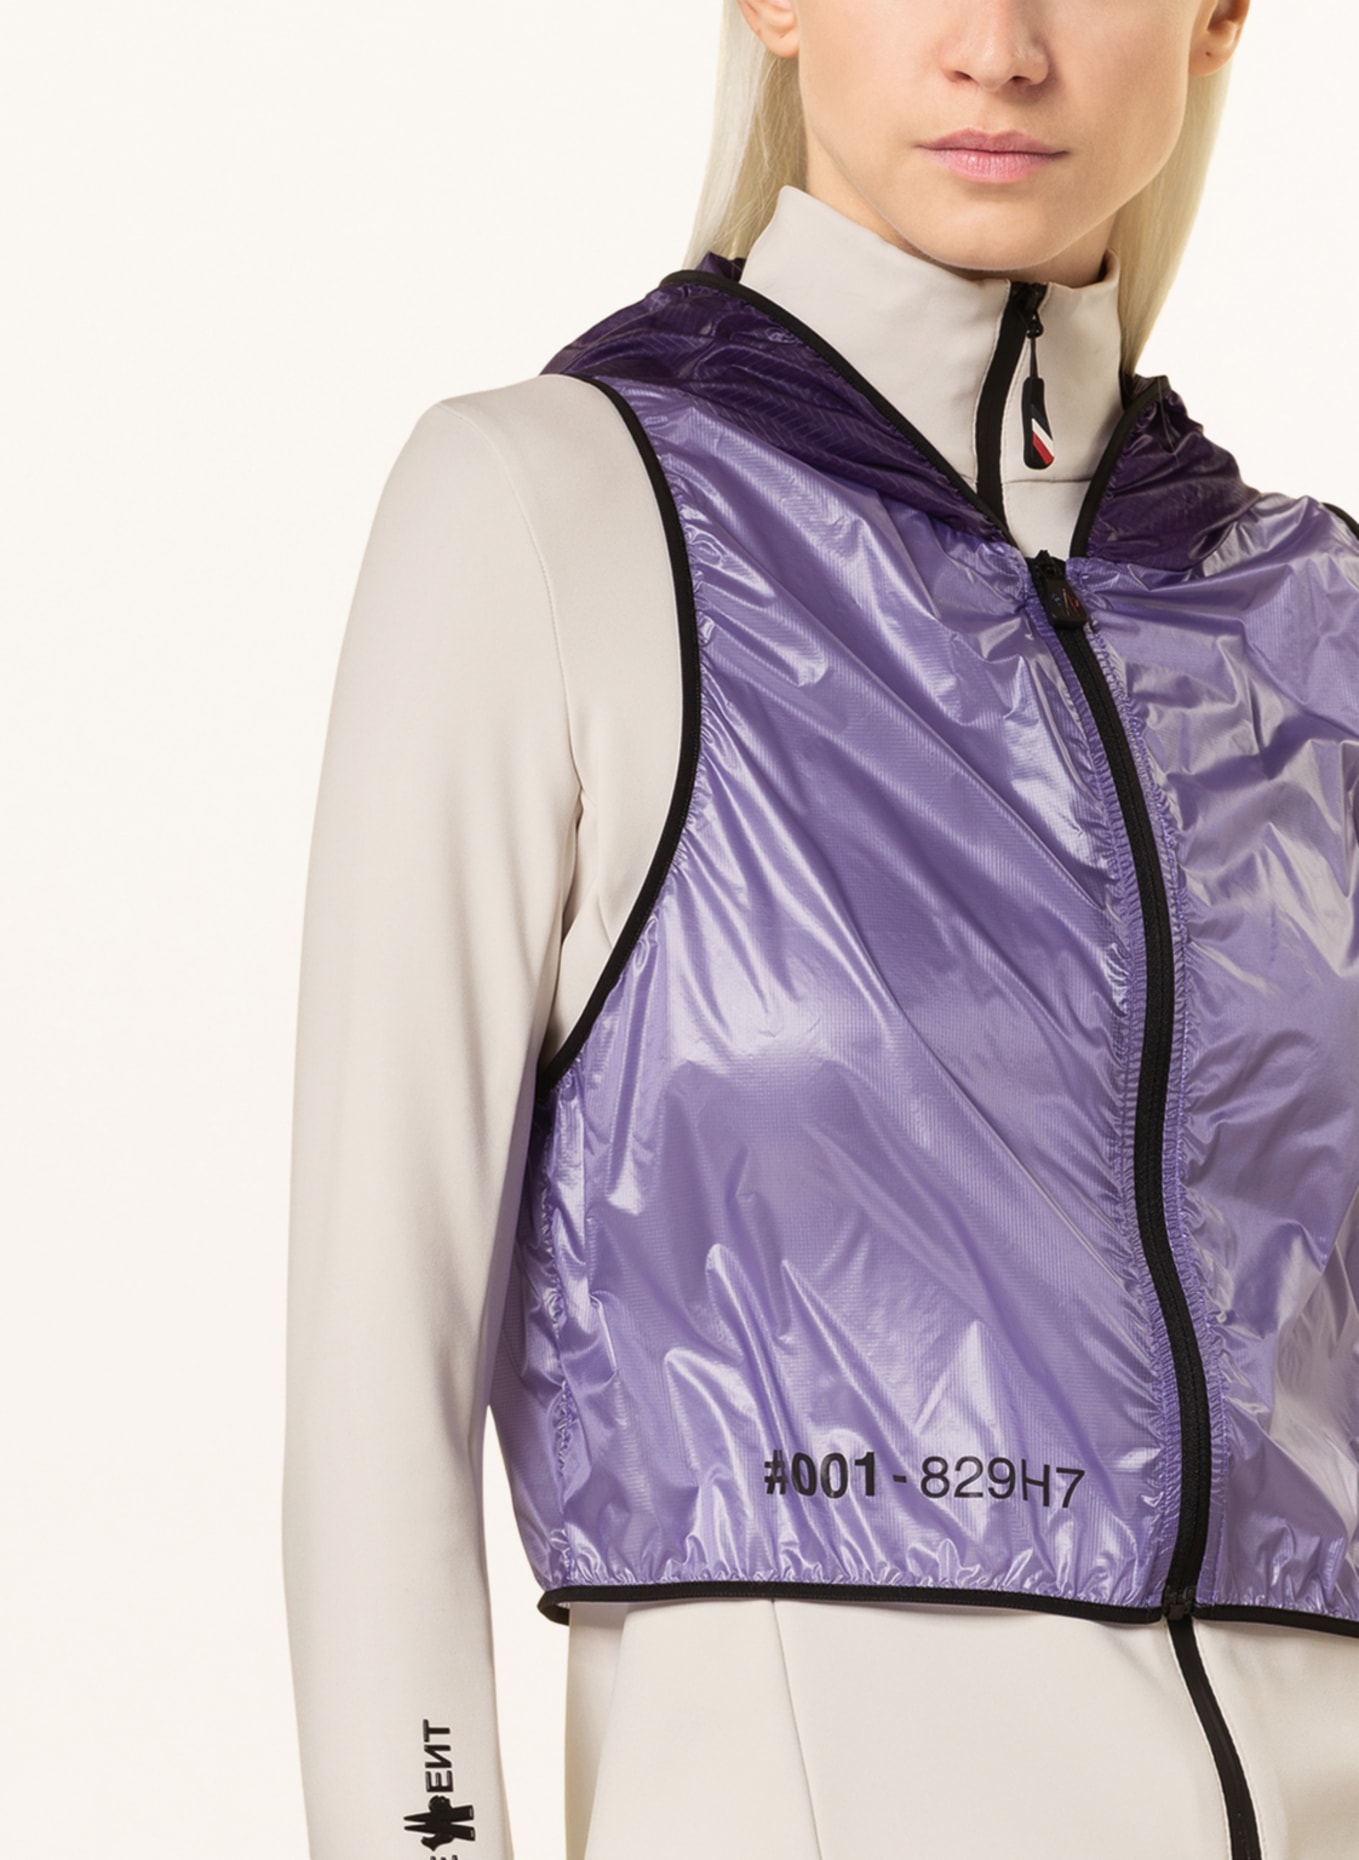 MONCLER GRENOBLE Jacket with detachable vest, Color: CREAM/ PURPLE (Image 5)